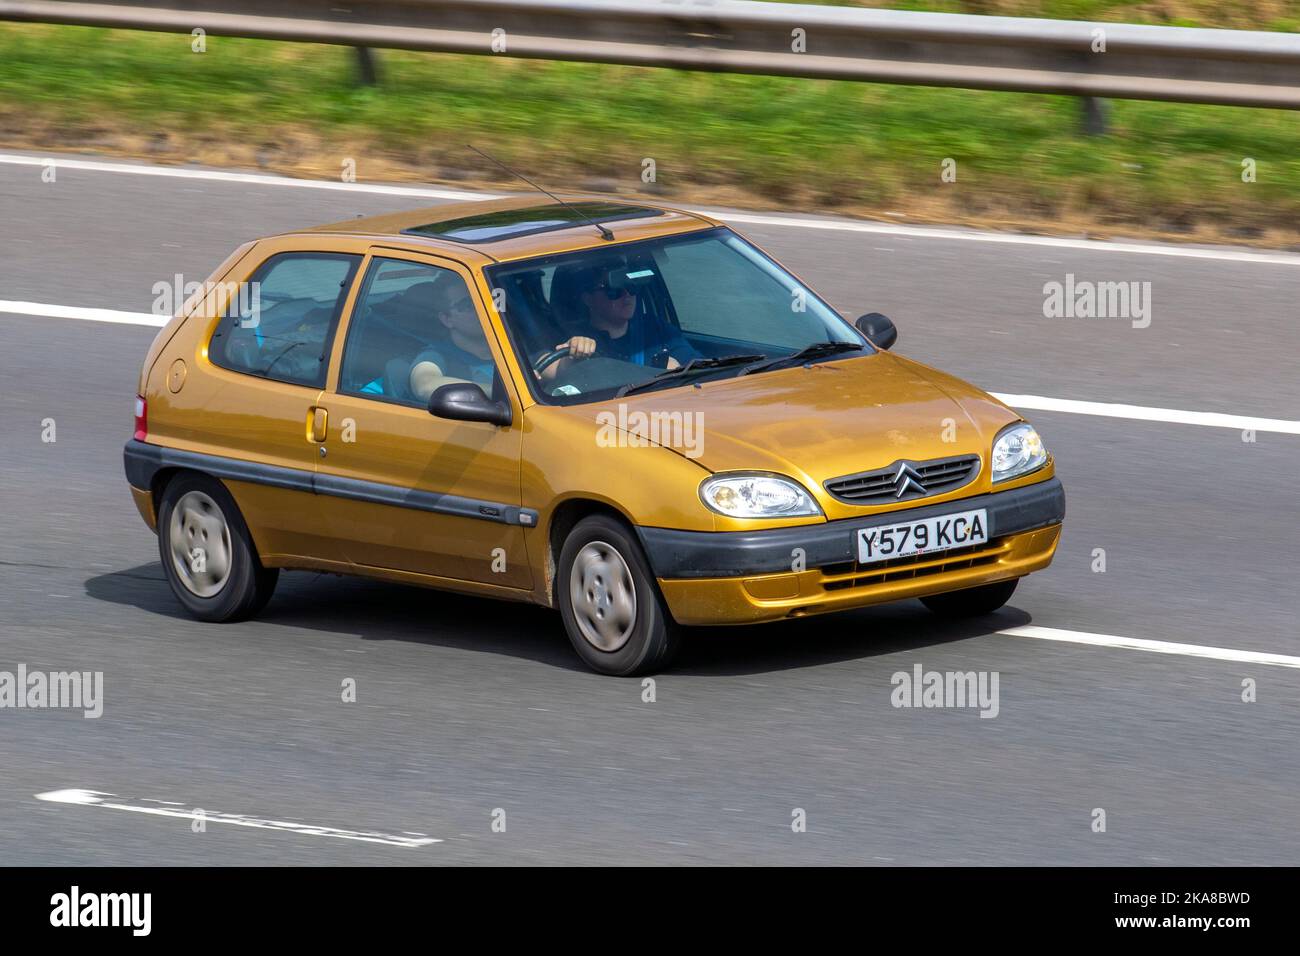 2001 Gold gelbes SCHALTGETRIEBE MIT 1124cc Benzinern 5, verkauft in Japan als Citroën Chanson, auf der Autobahn M6, Großbritannien Stockfoto